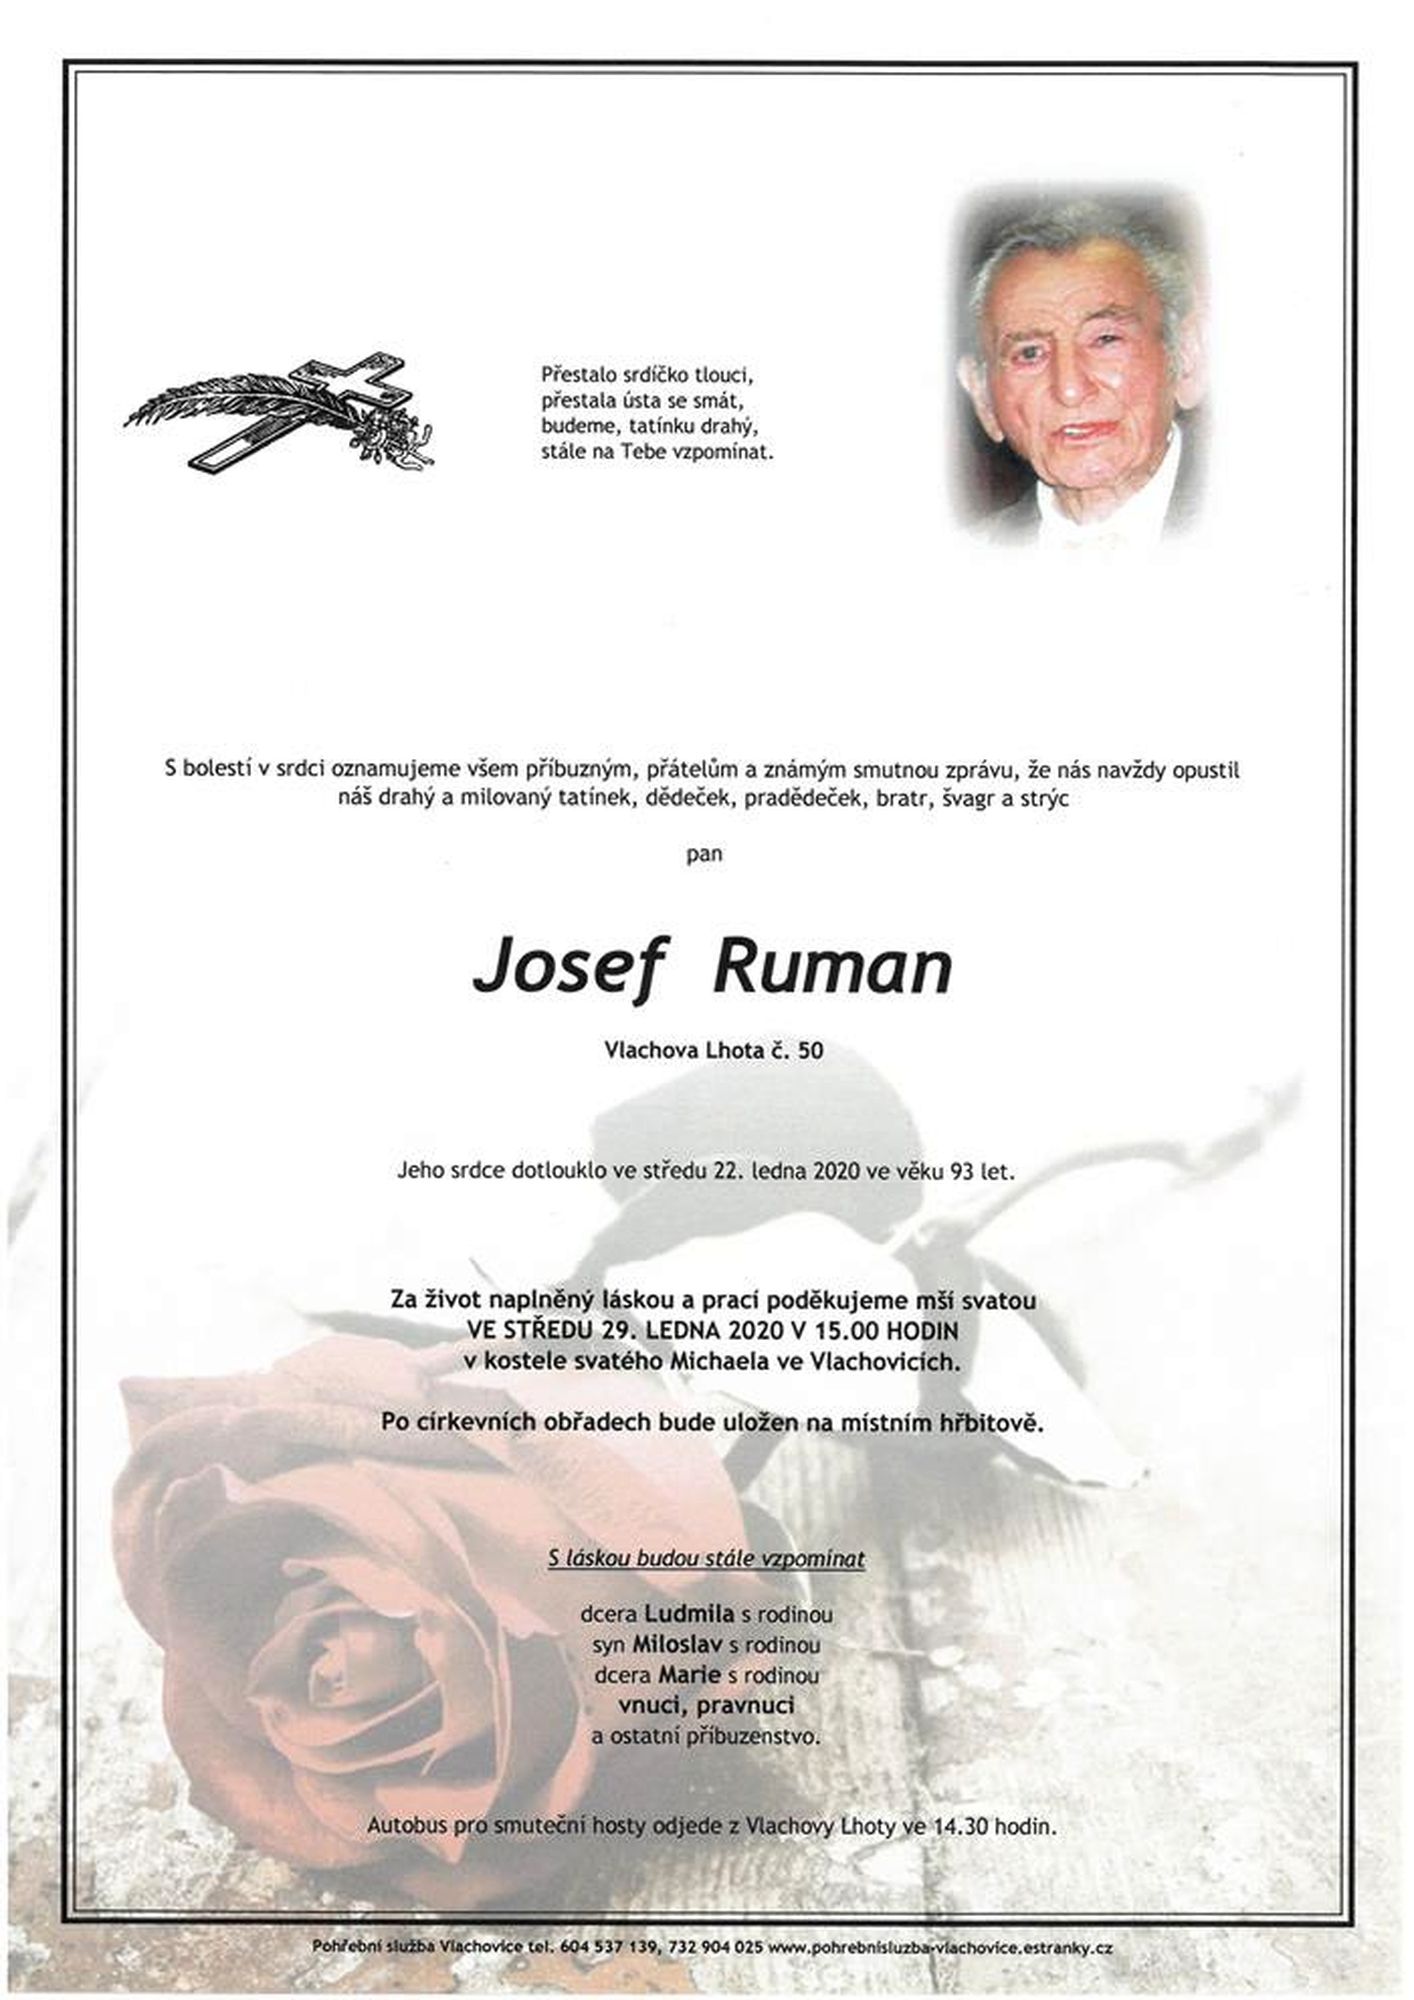 Josef Ruman